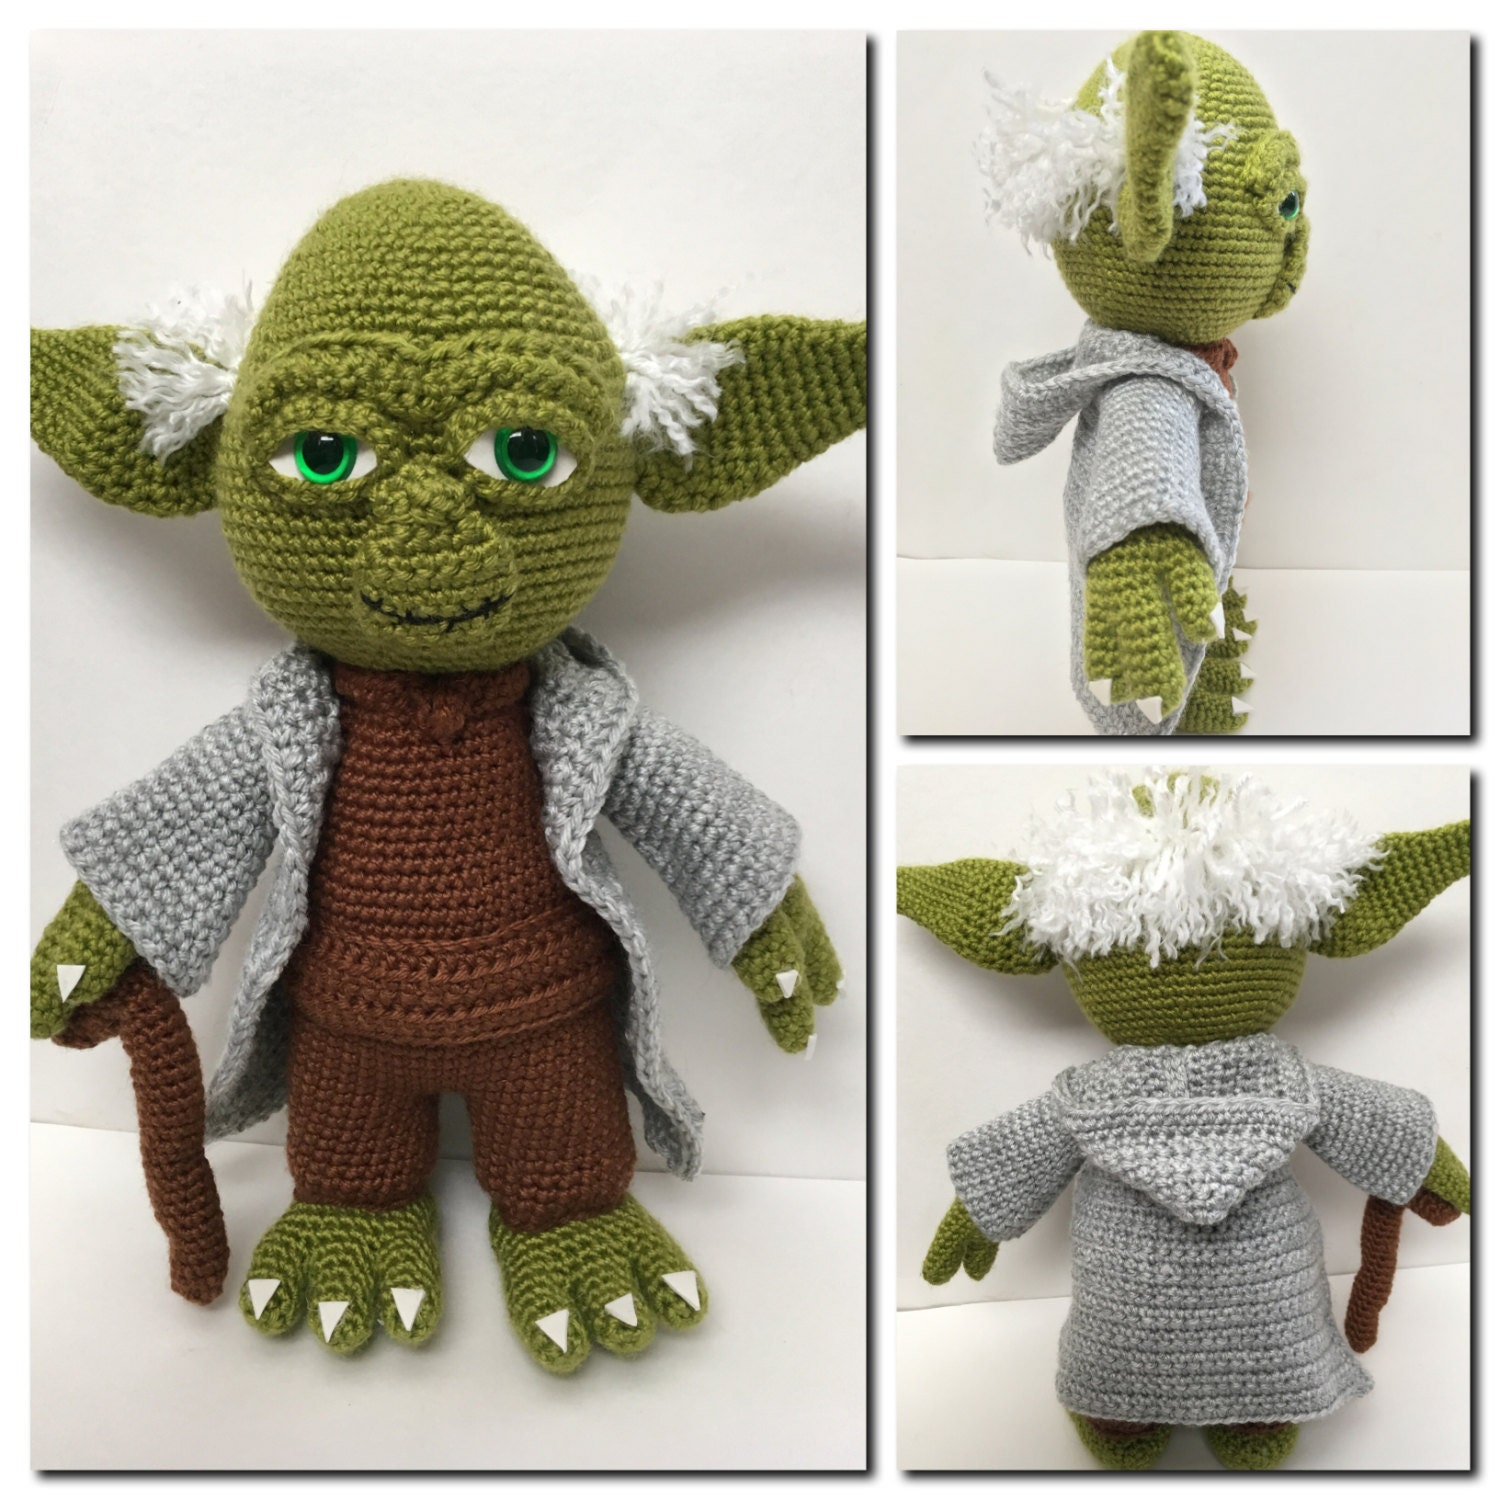 CROCHET PATTERN: Yoda the Wise One